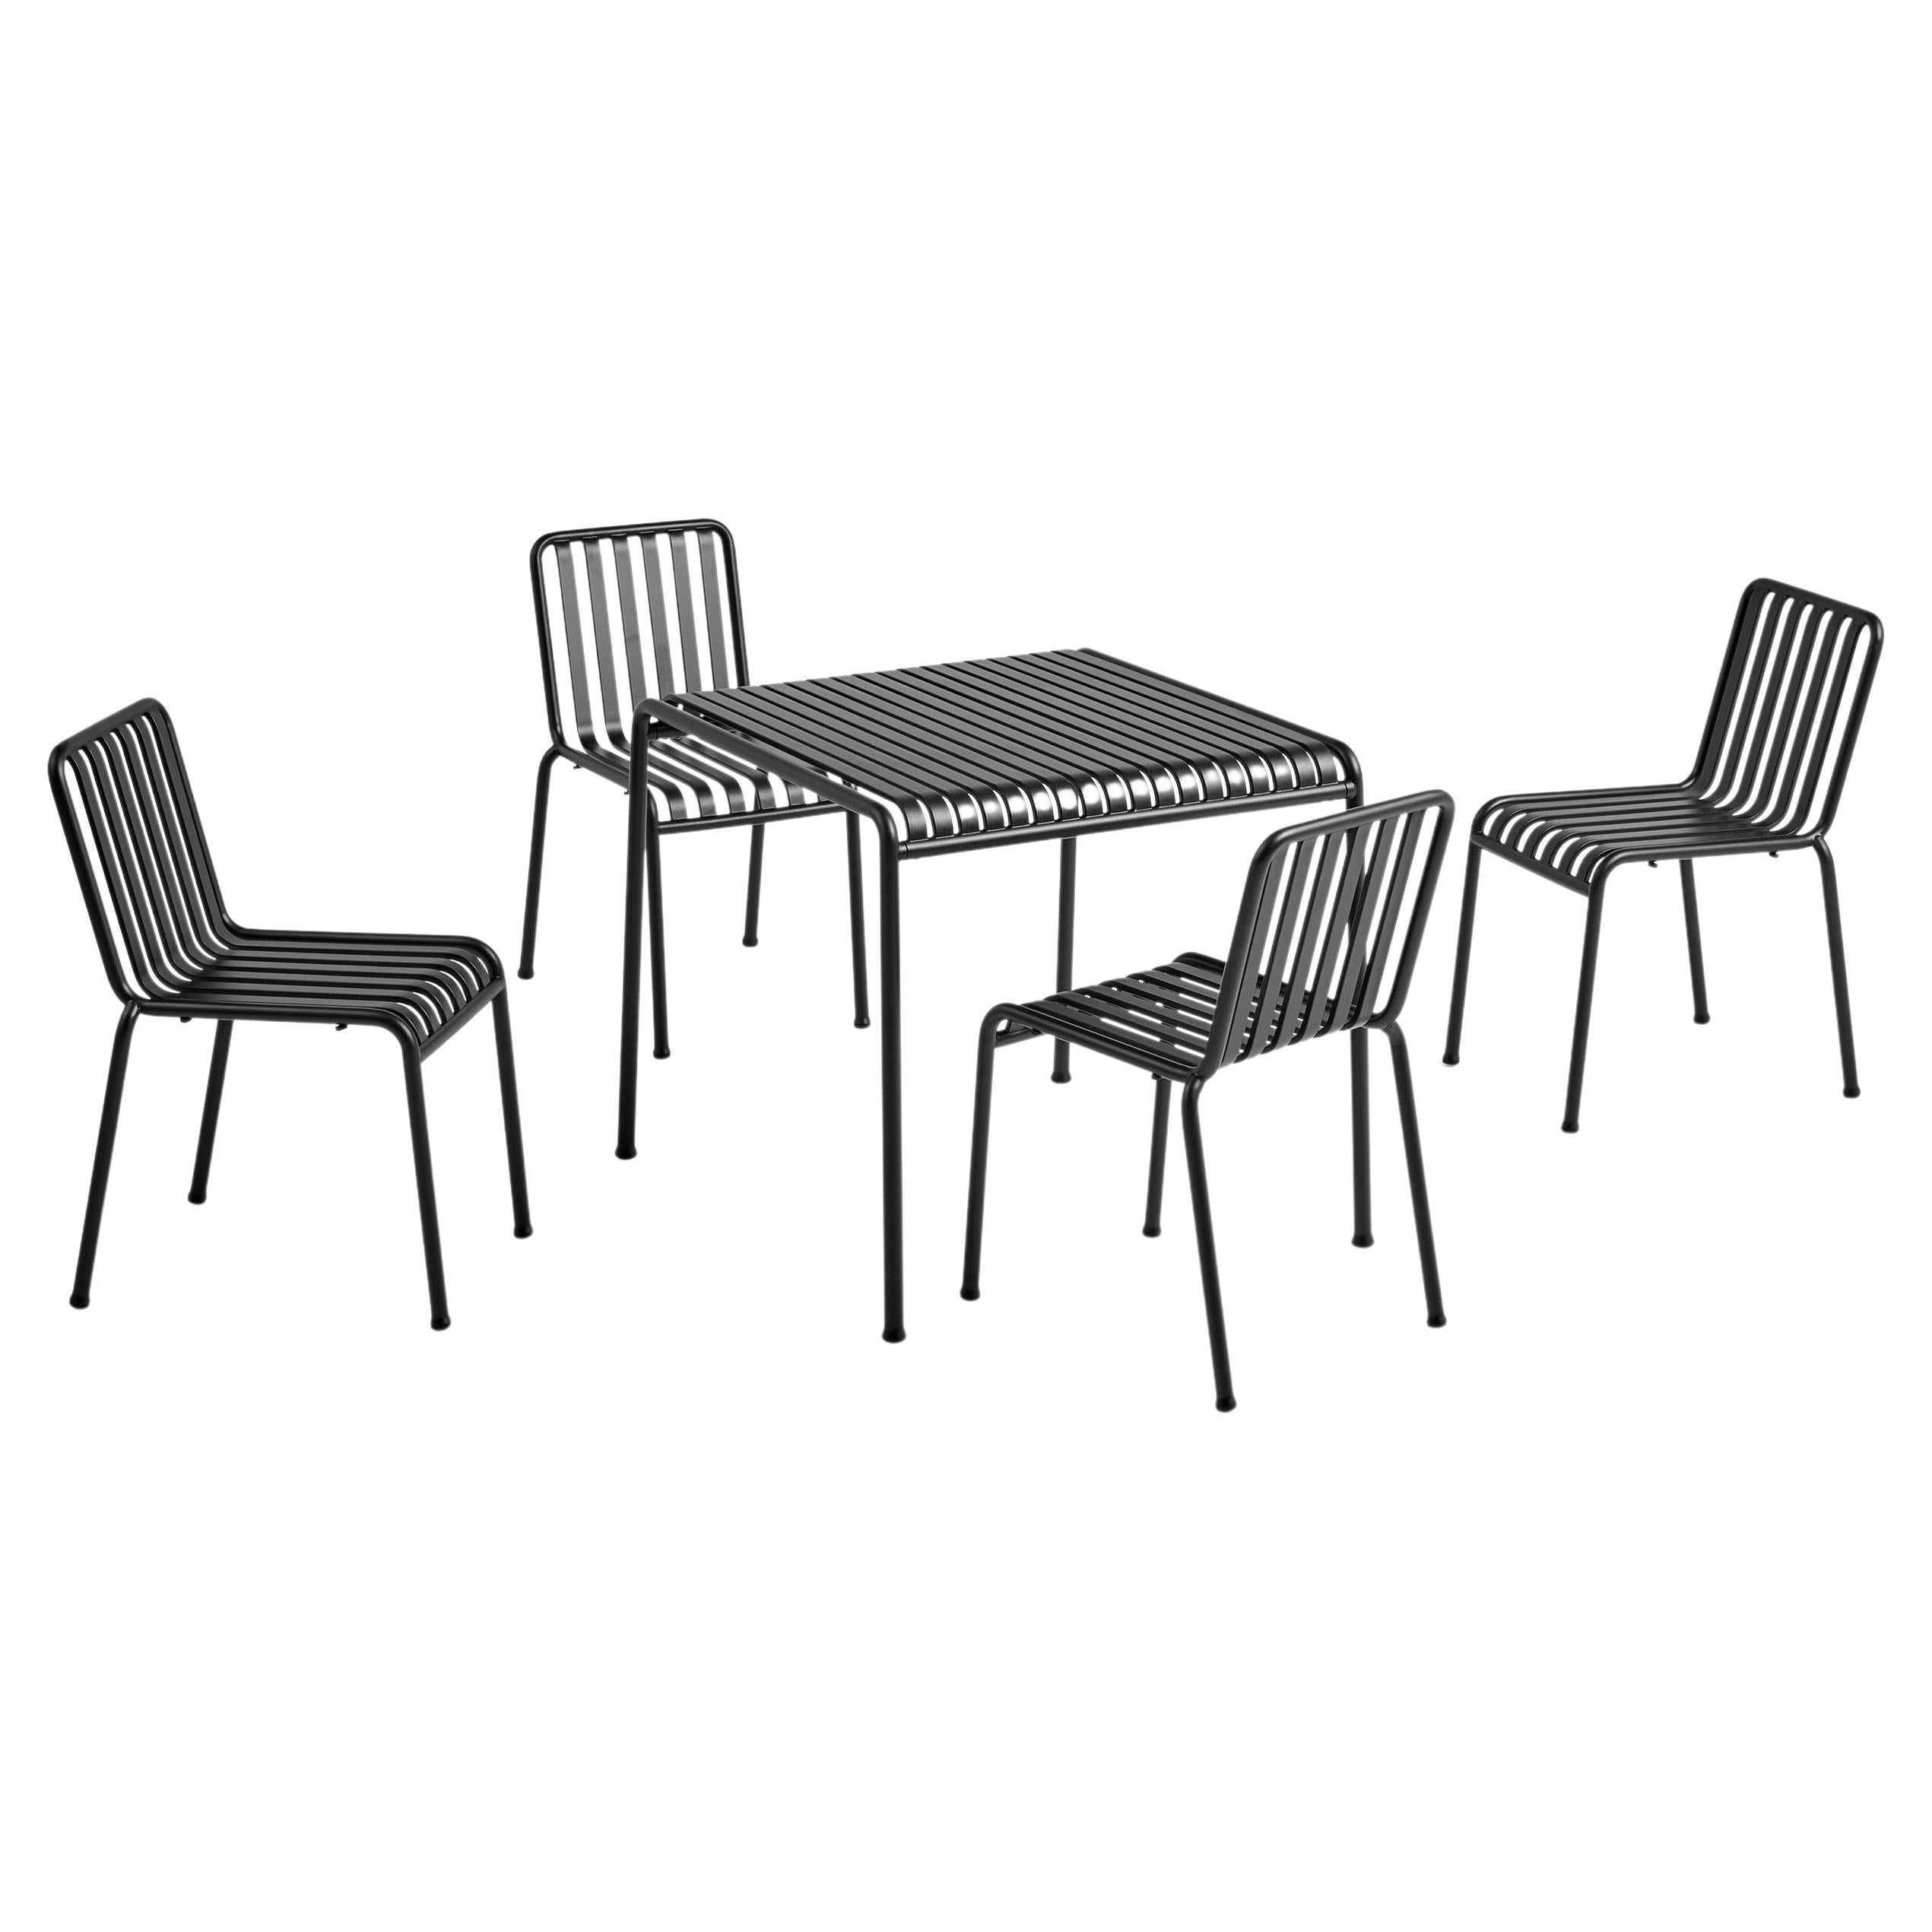 Ensemble de tables et chaises Palissade, anthracite de Ronan/Erwan Bouroullec pour Hay